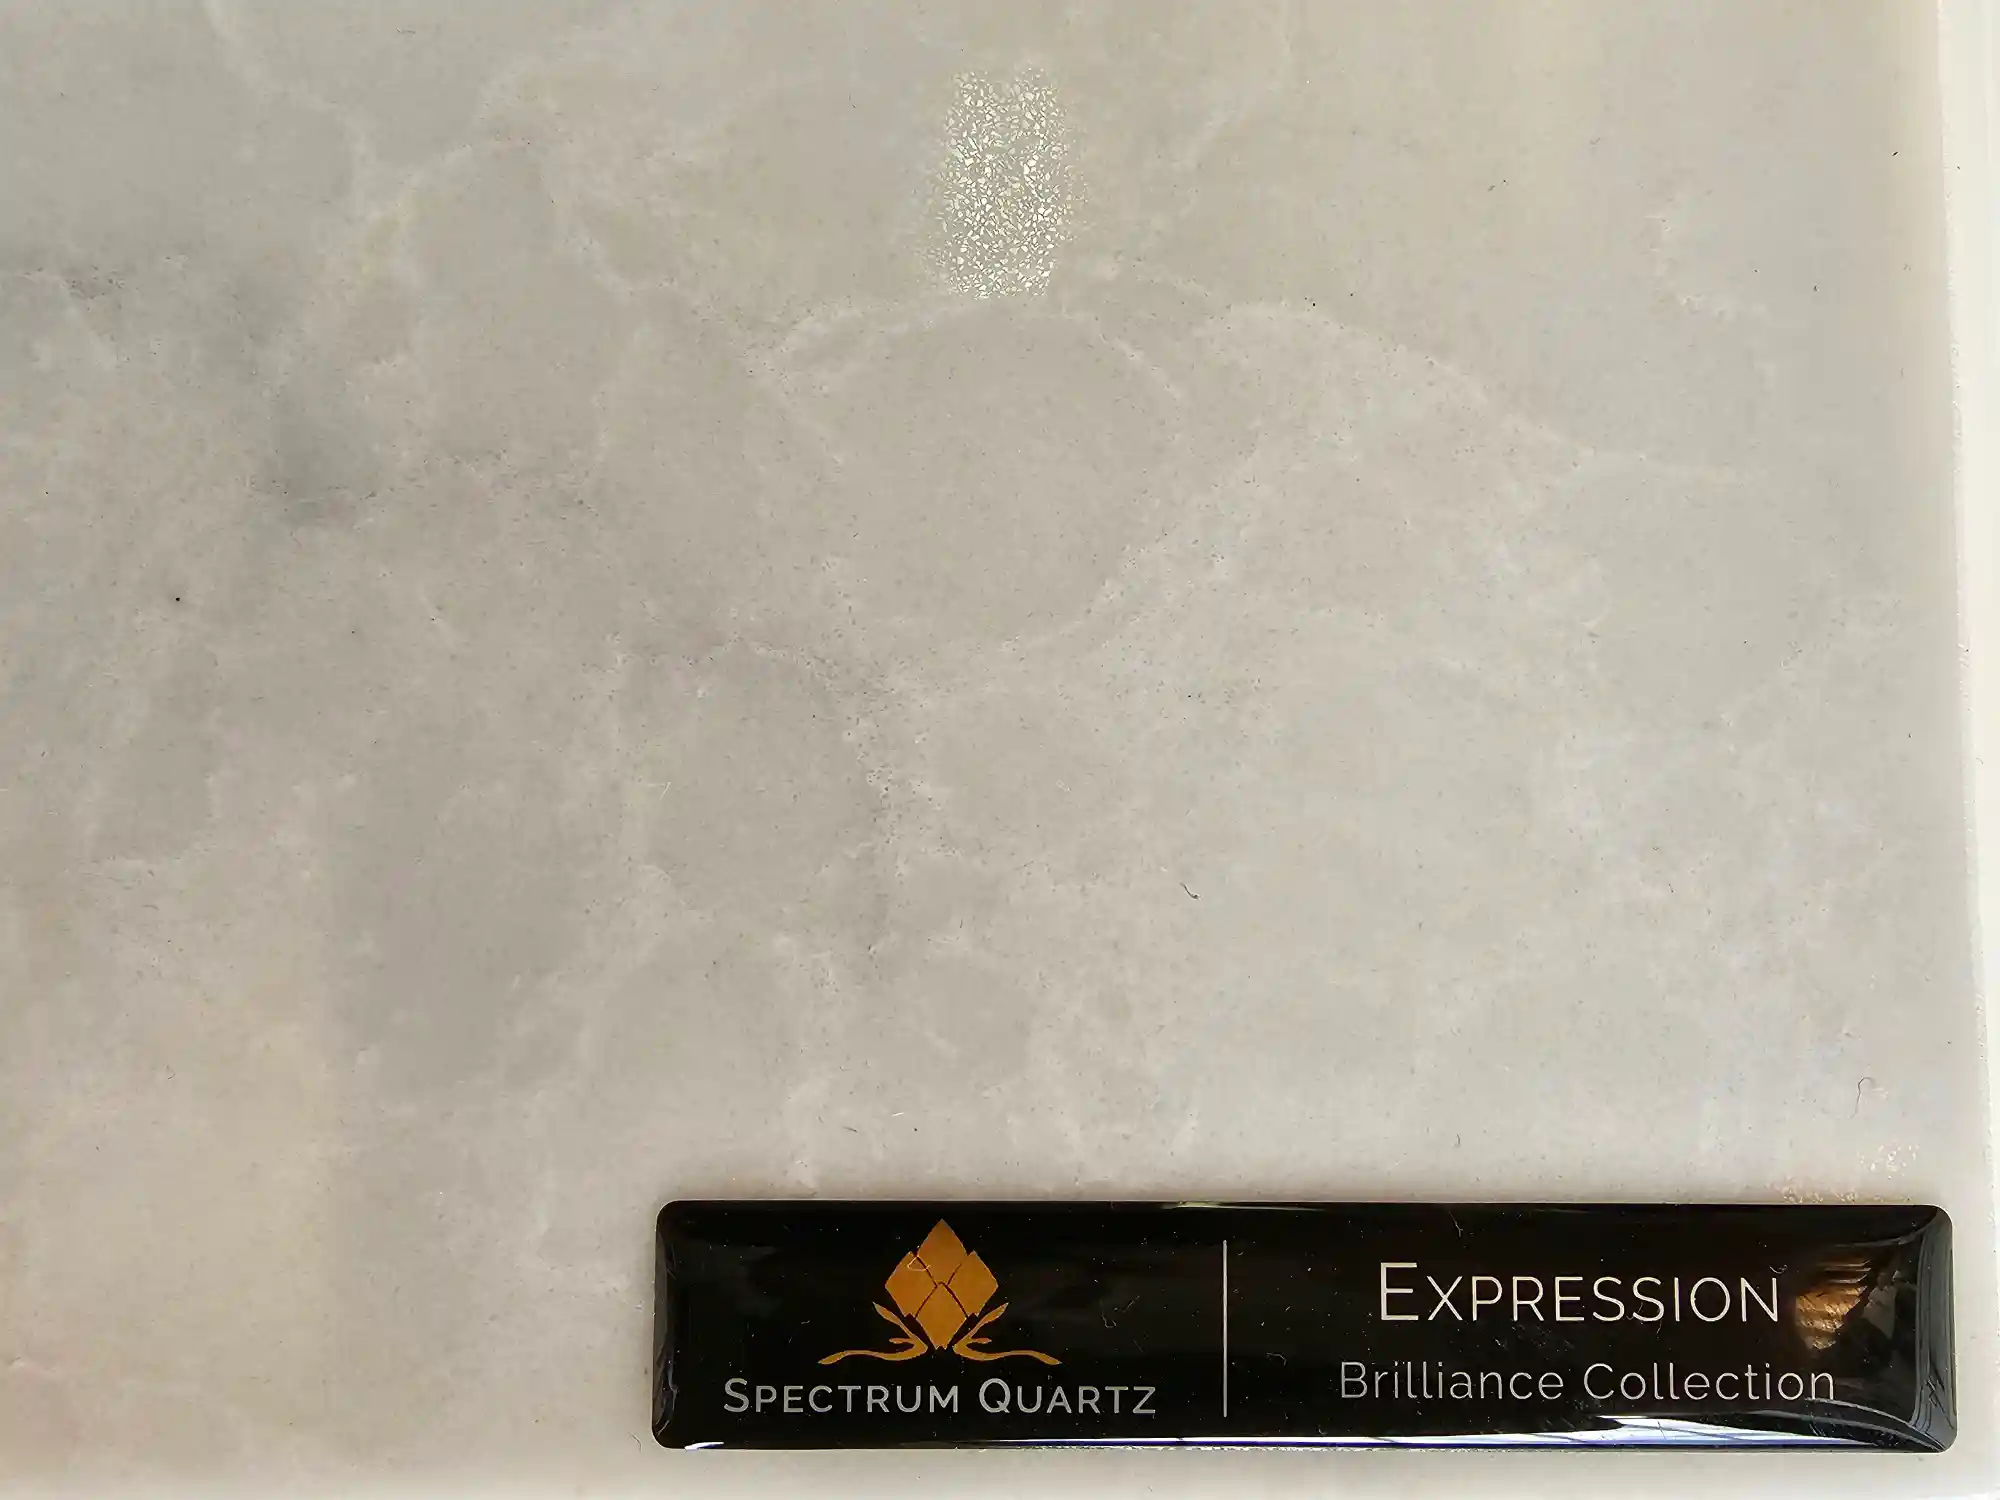 Expression spectrum quartz countertop